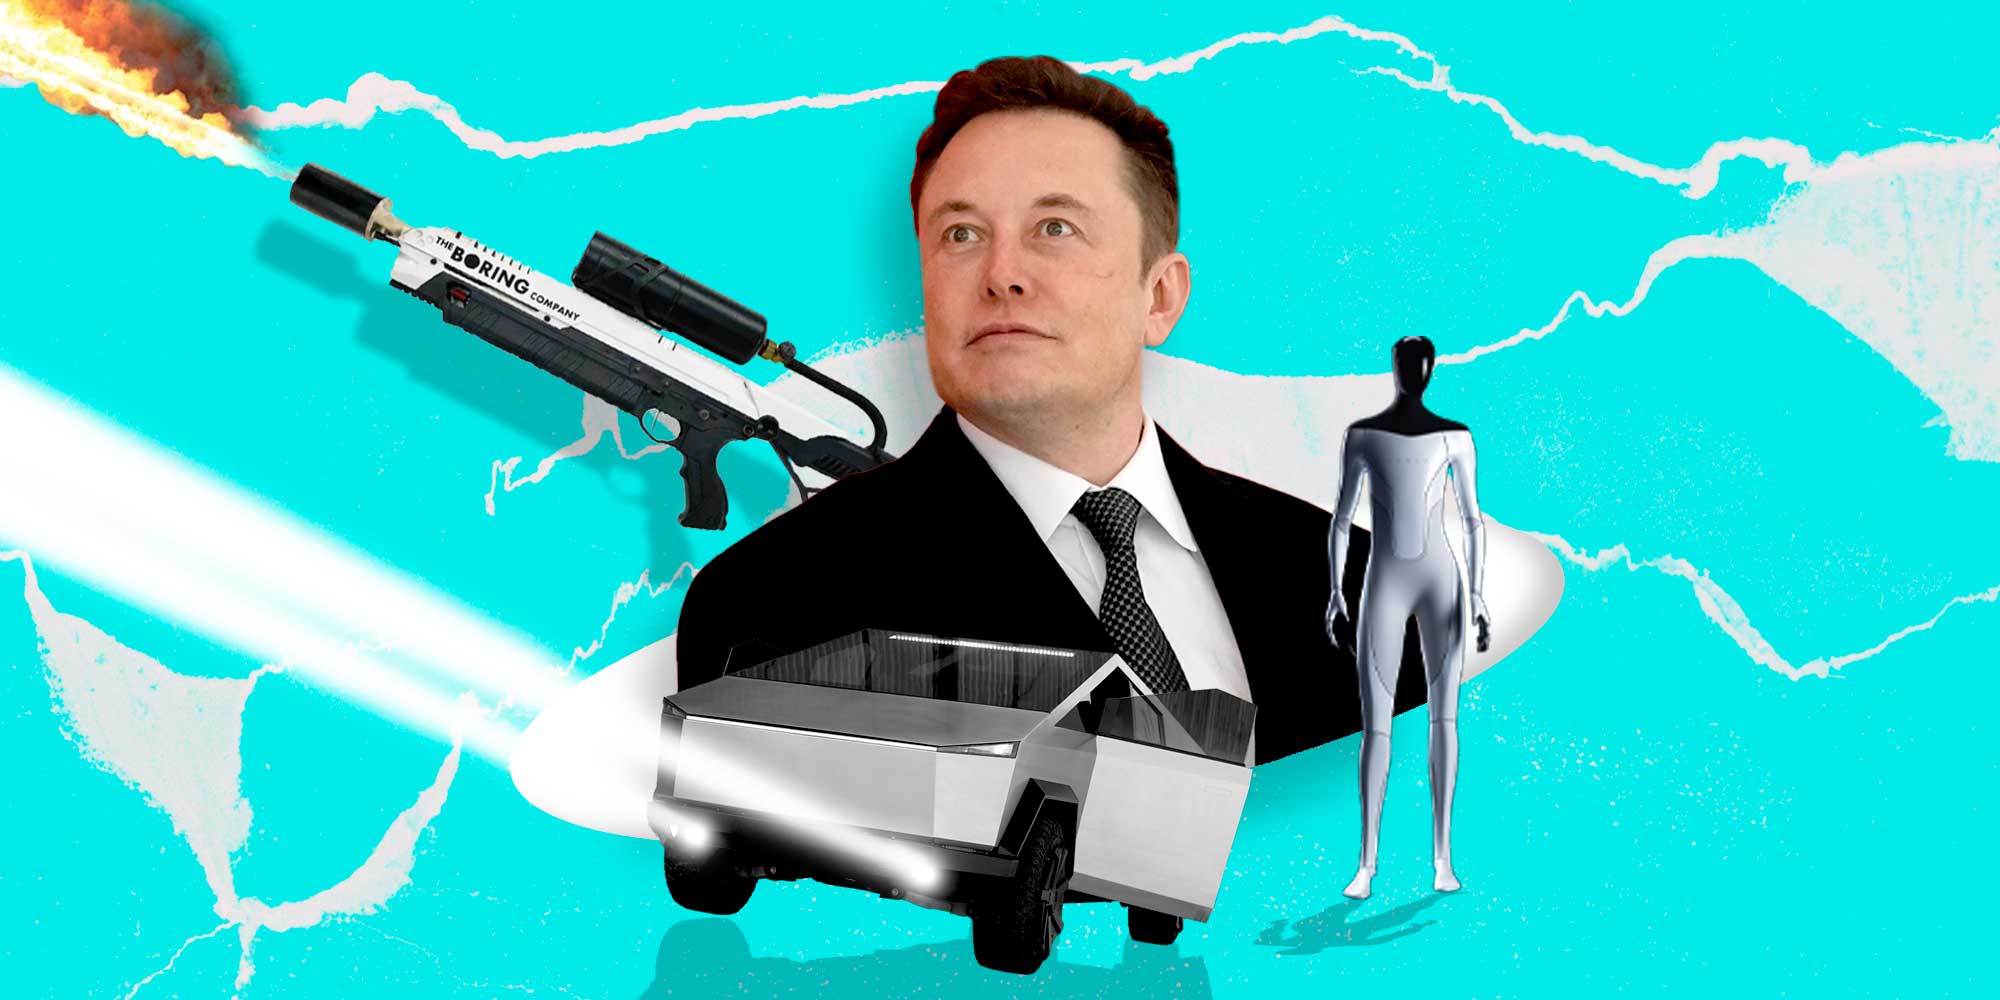 Los inventos más curiosos ligados a las empresas de Elon Musk